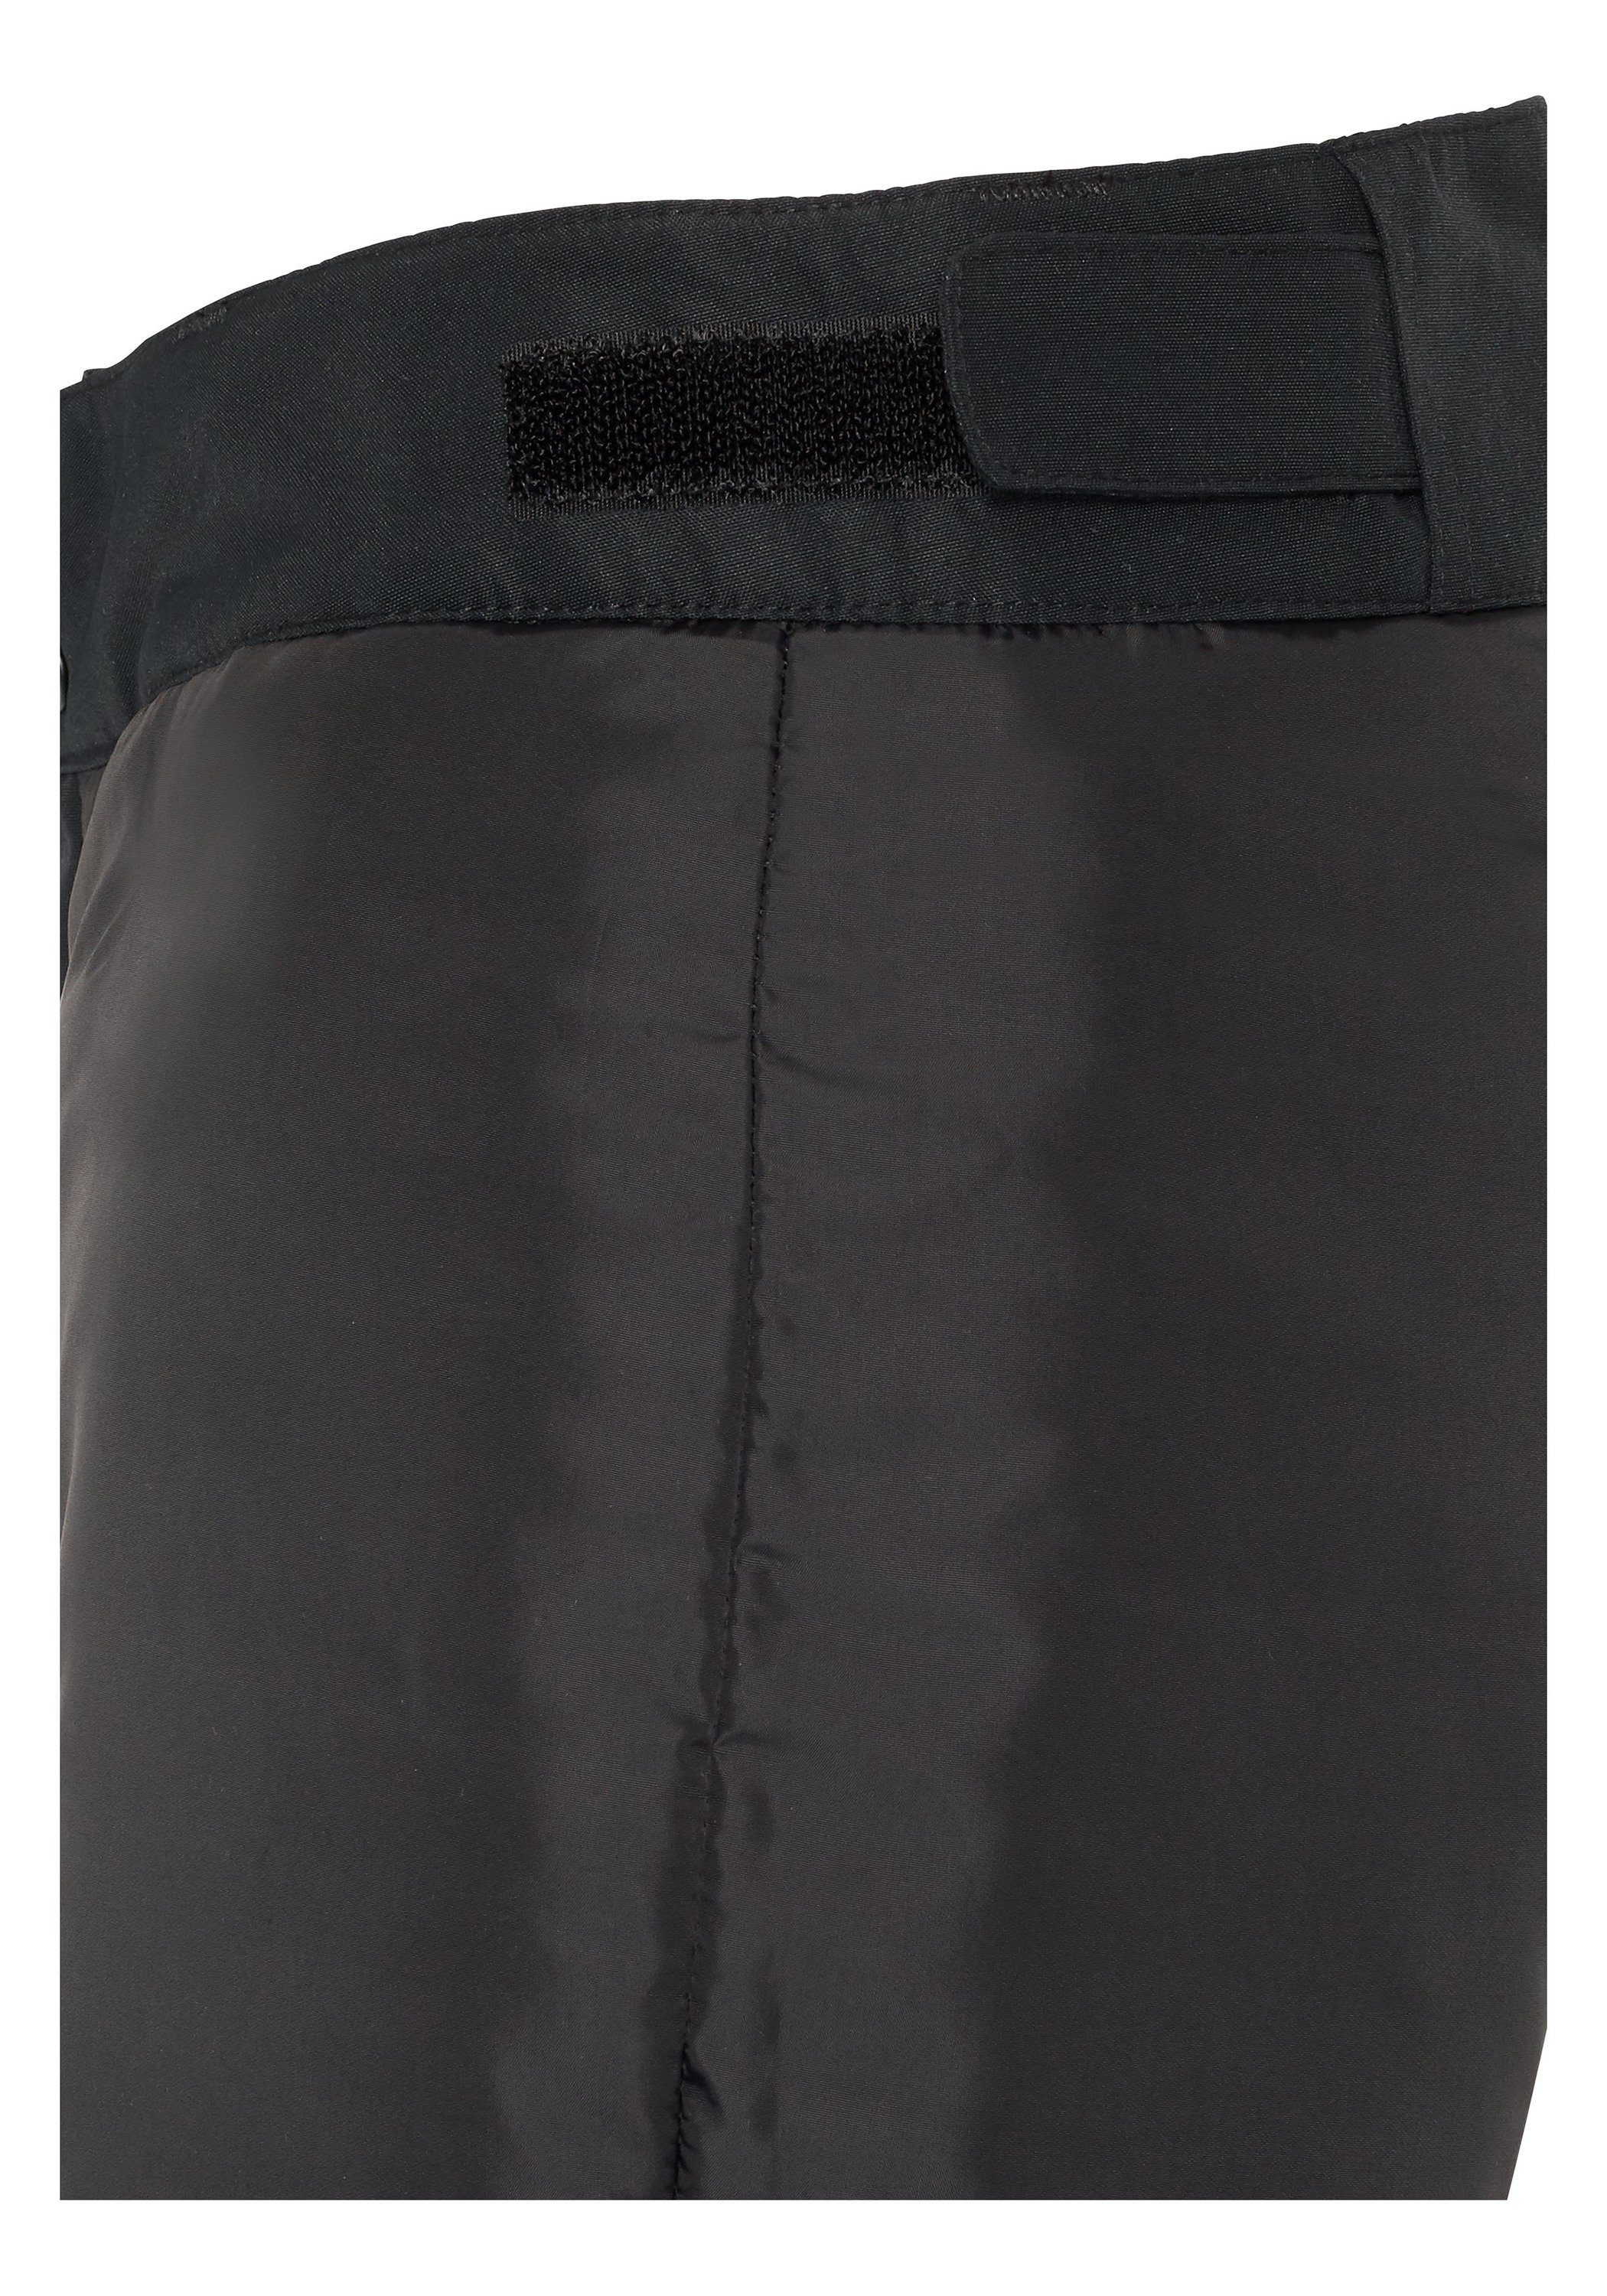 Skihose mit Sporthose Bein schwarz am 1 Chiemsee PlusMinus Print